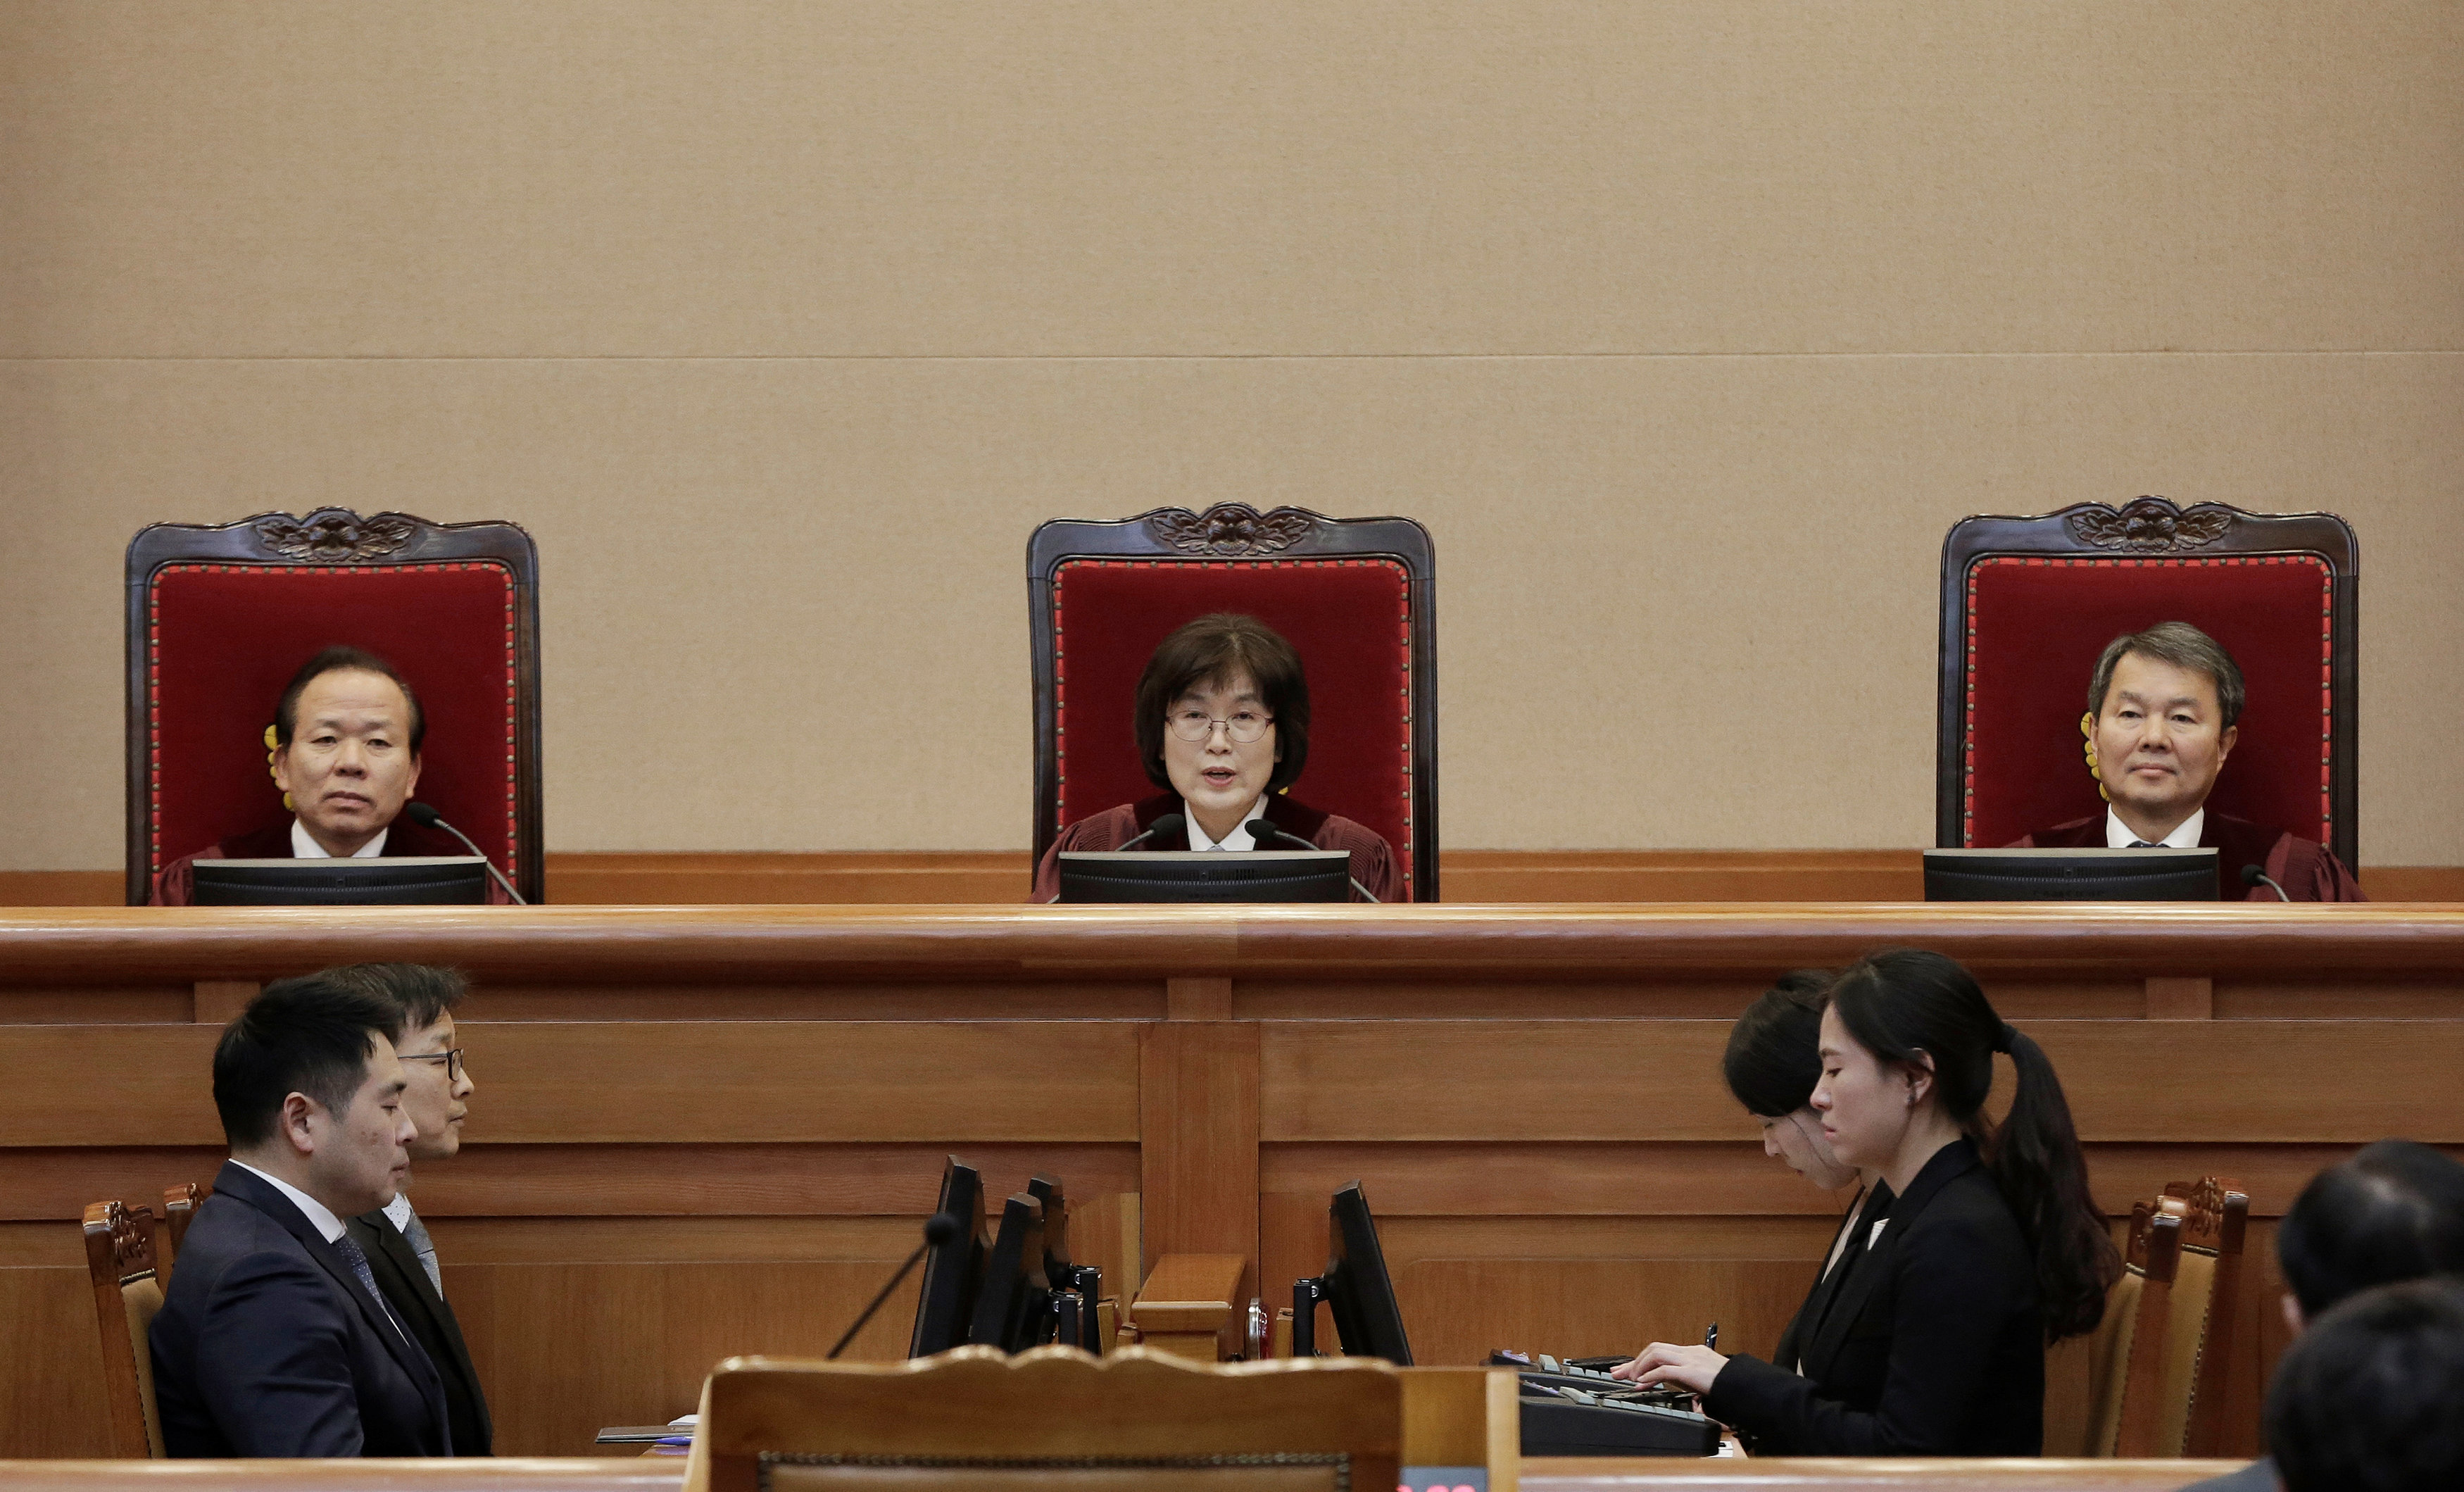 المحكمة الدستورية تنظر محاكمة لرئيسة كوريا الجنوبية